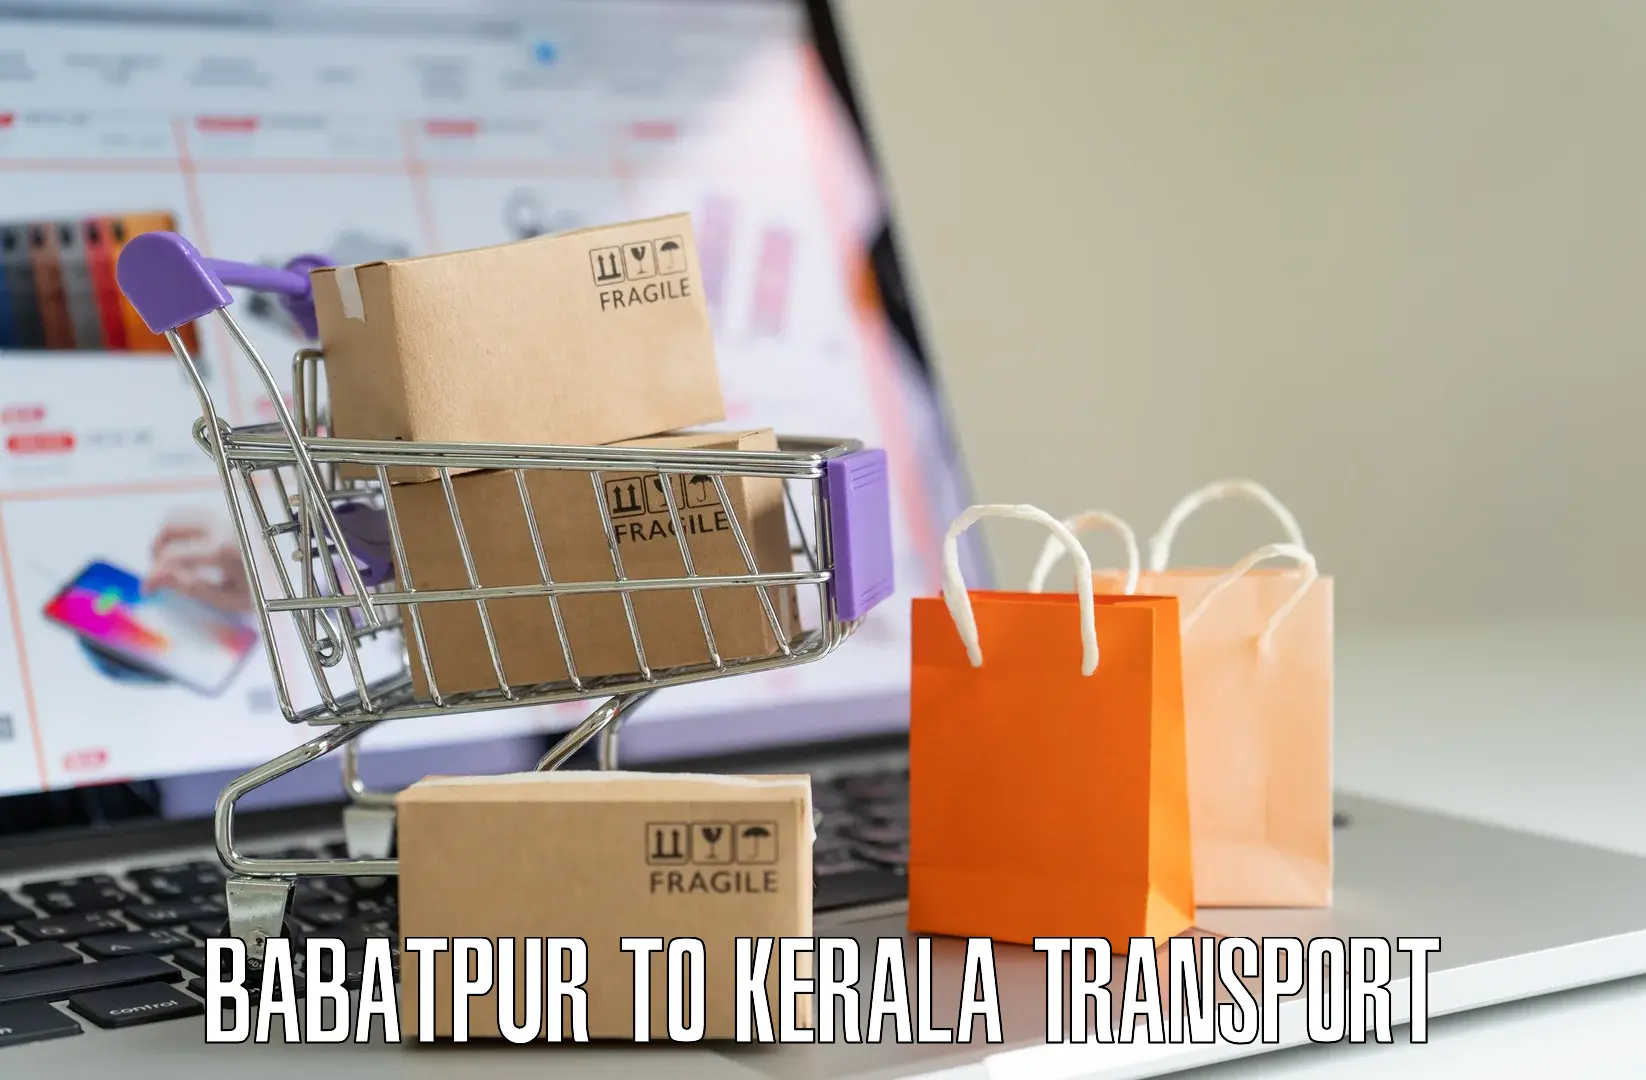 Shipping partner Babatpur to Kalanjoor